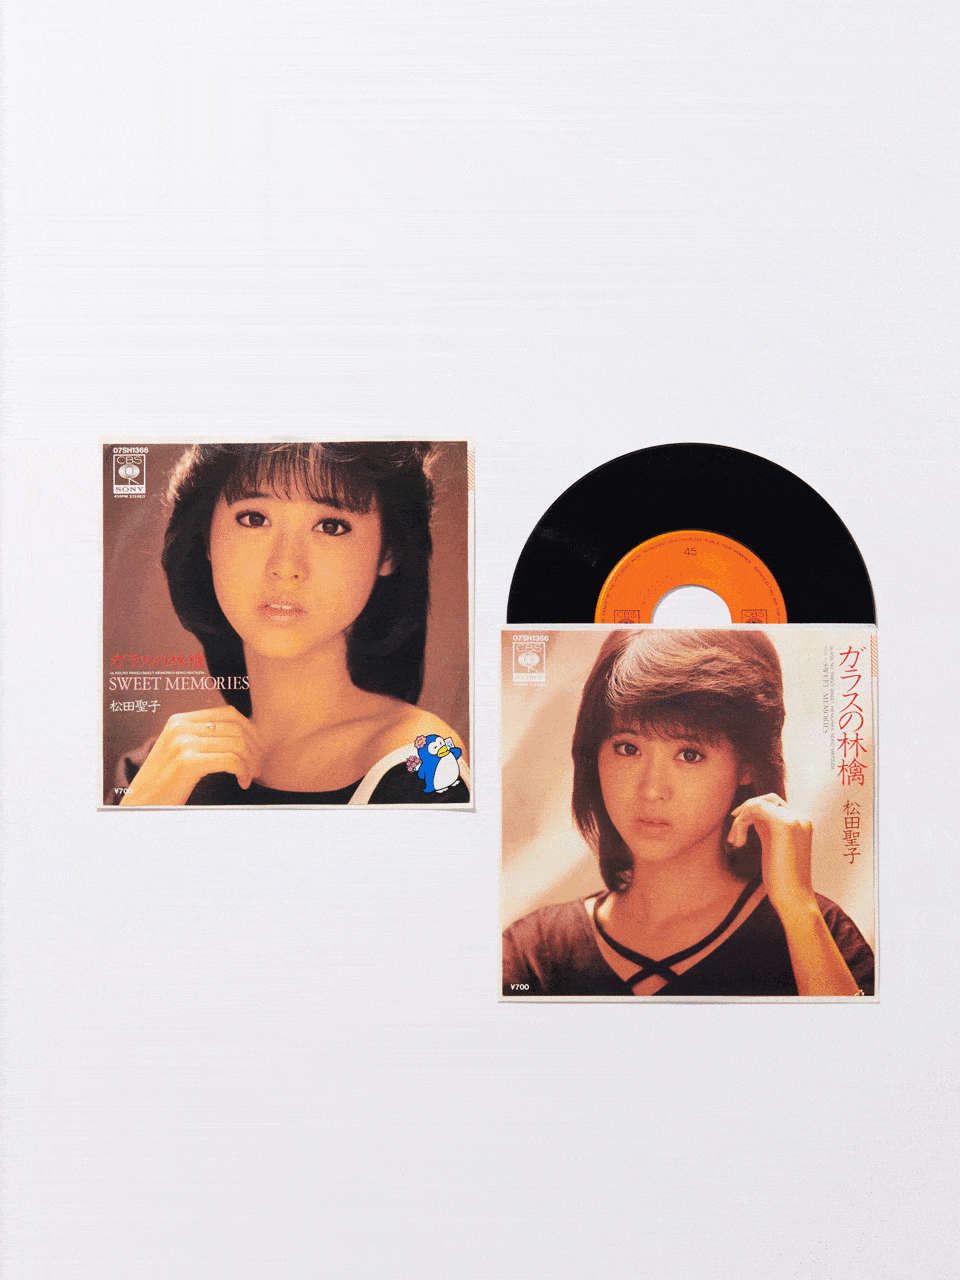 松田聖子の80年代伝説Vol.10 両A面で共に1位に輝いた『ガラスの林檎』と『SWEET MEMORIES』